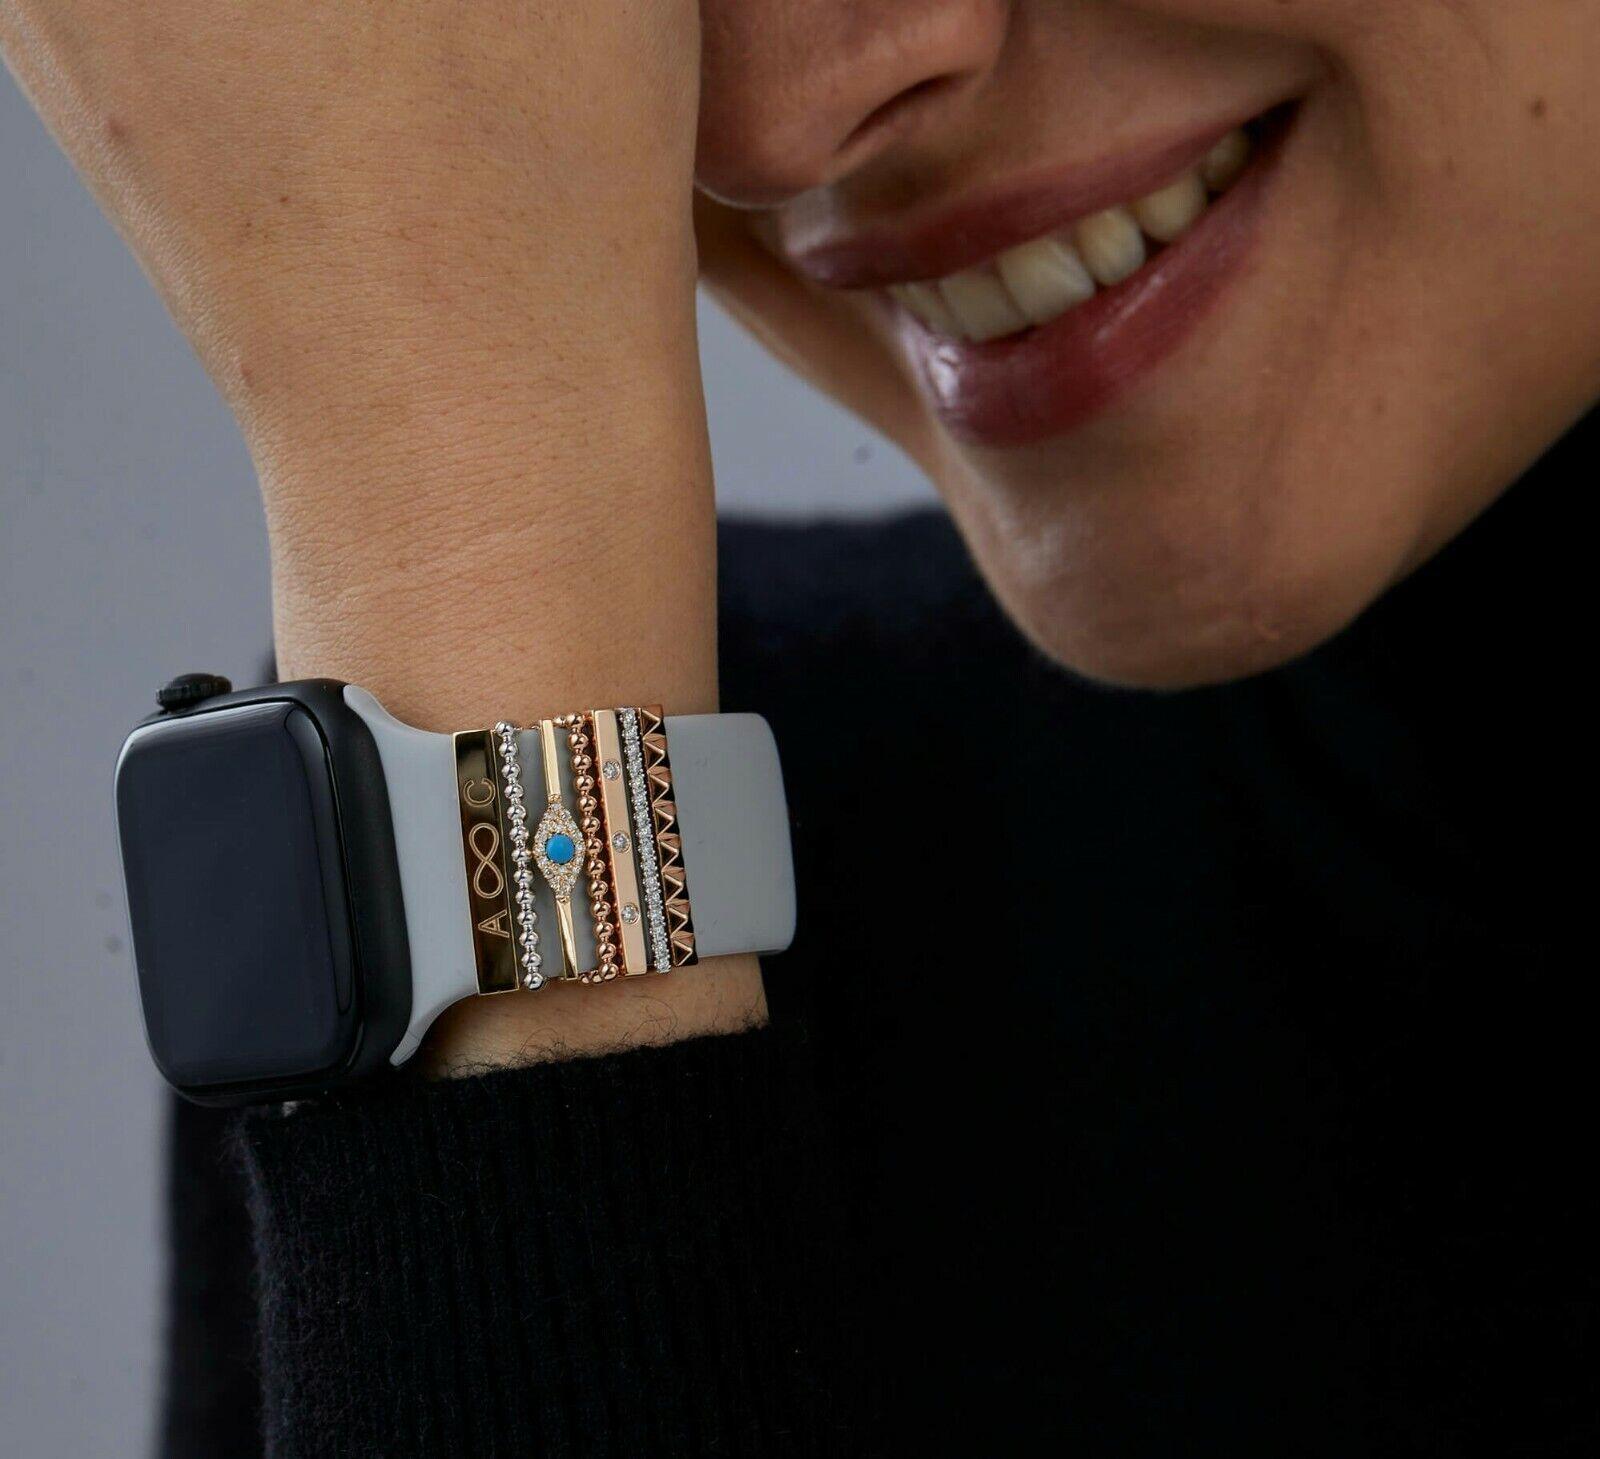 Véritable diamant Accents Bar Smart Watch Band Charm 14k Solid Gold Accessoires.

Fait à la main
Oui
Pays/Région de fabrication
Inde
Matériau
Diamant naturel, or jaune massif 14k, or massif
Thème
Luxe
Clarté du diamant
Si1

Couleur du